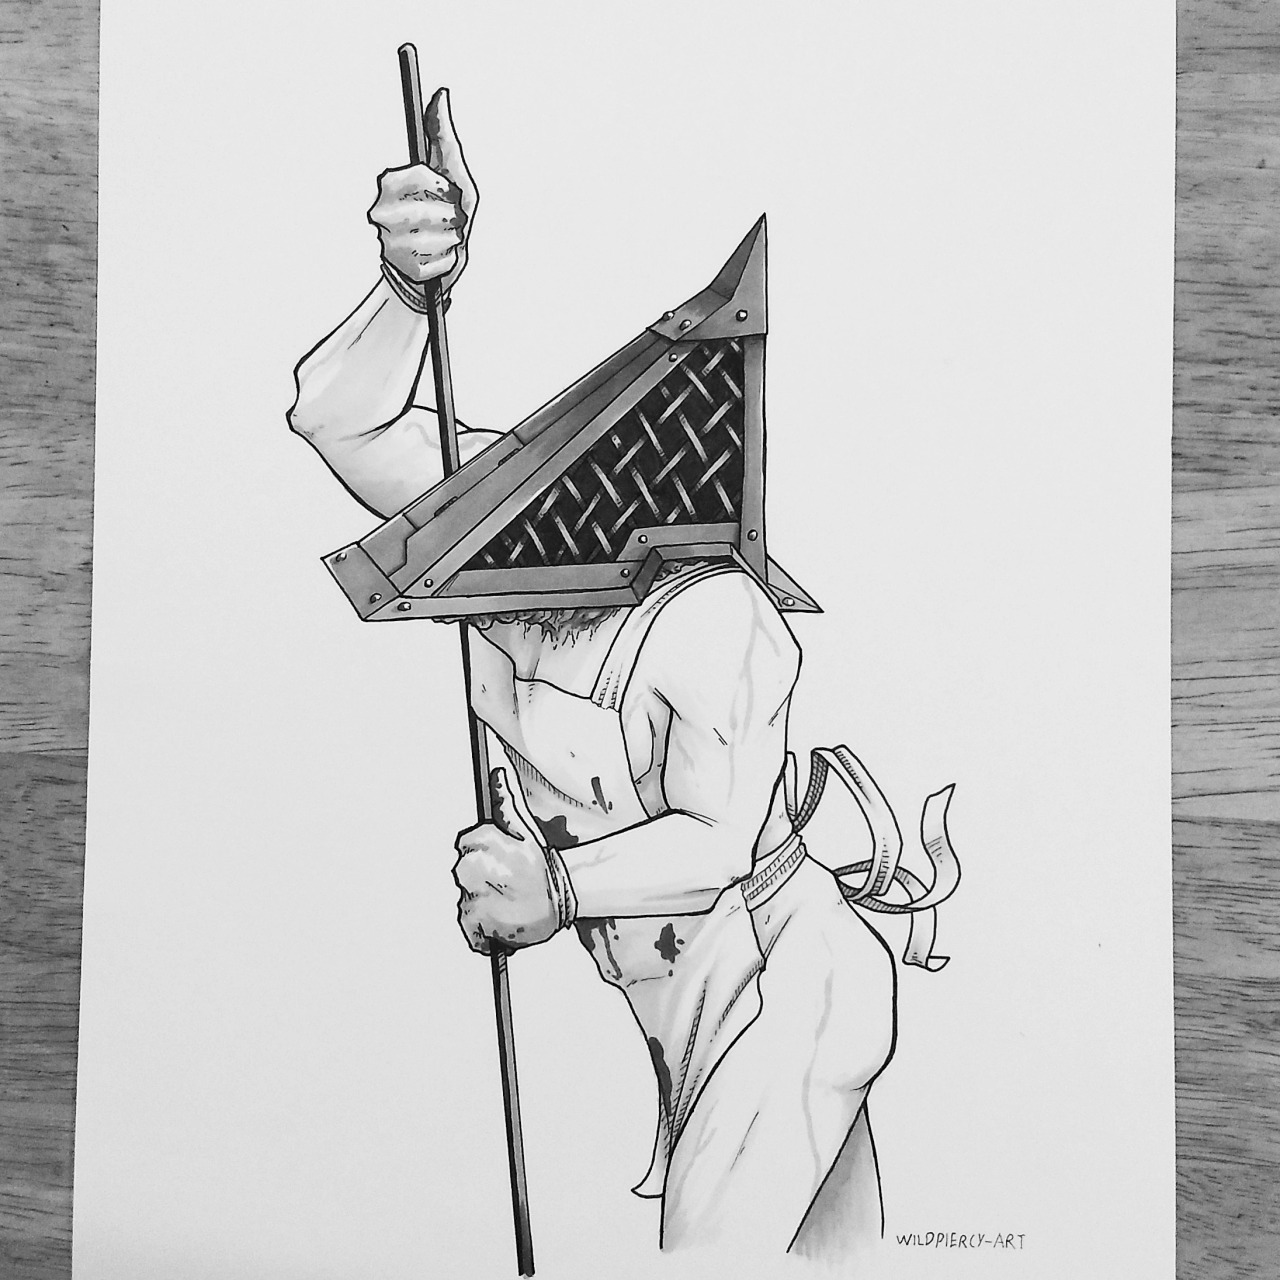 Pyramid Head Skadoodle_Noodles - Illustrations ART street